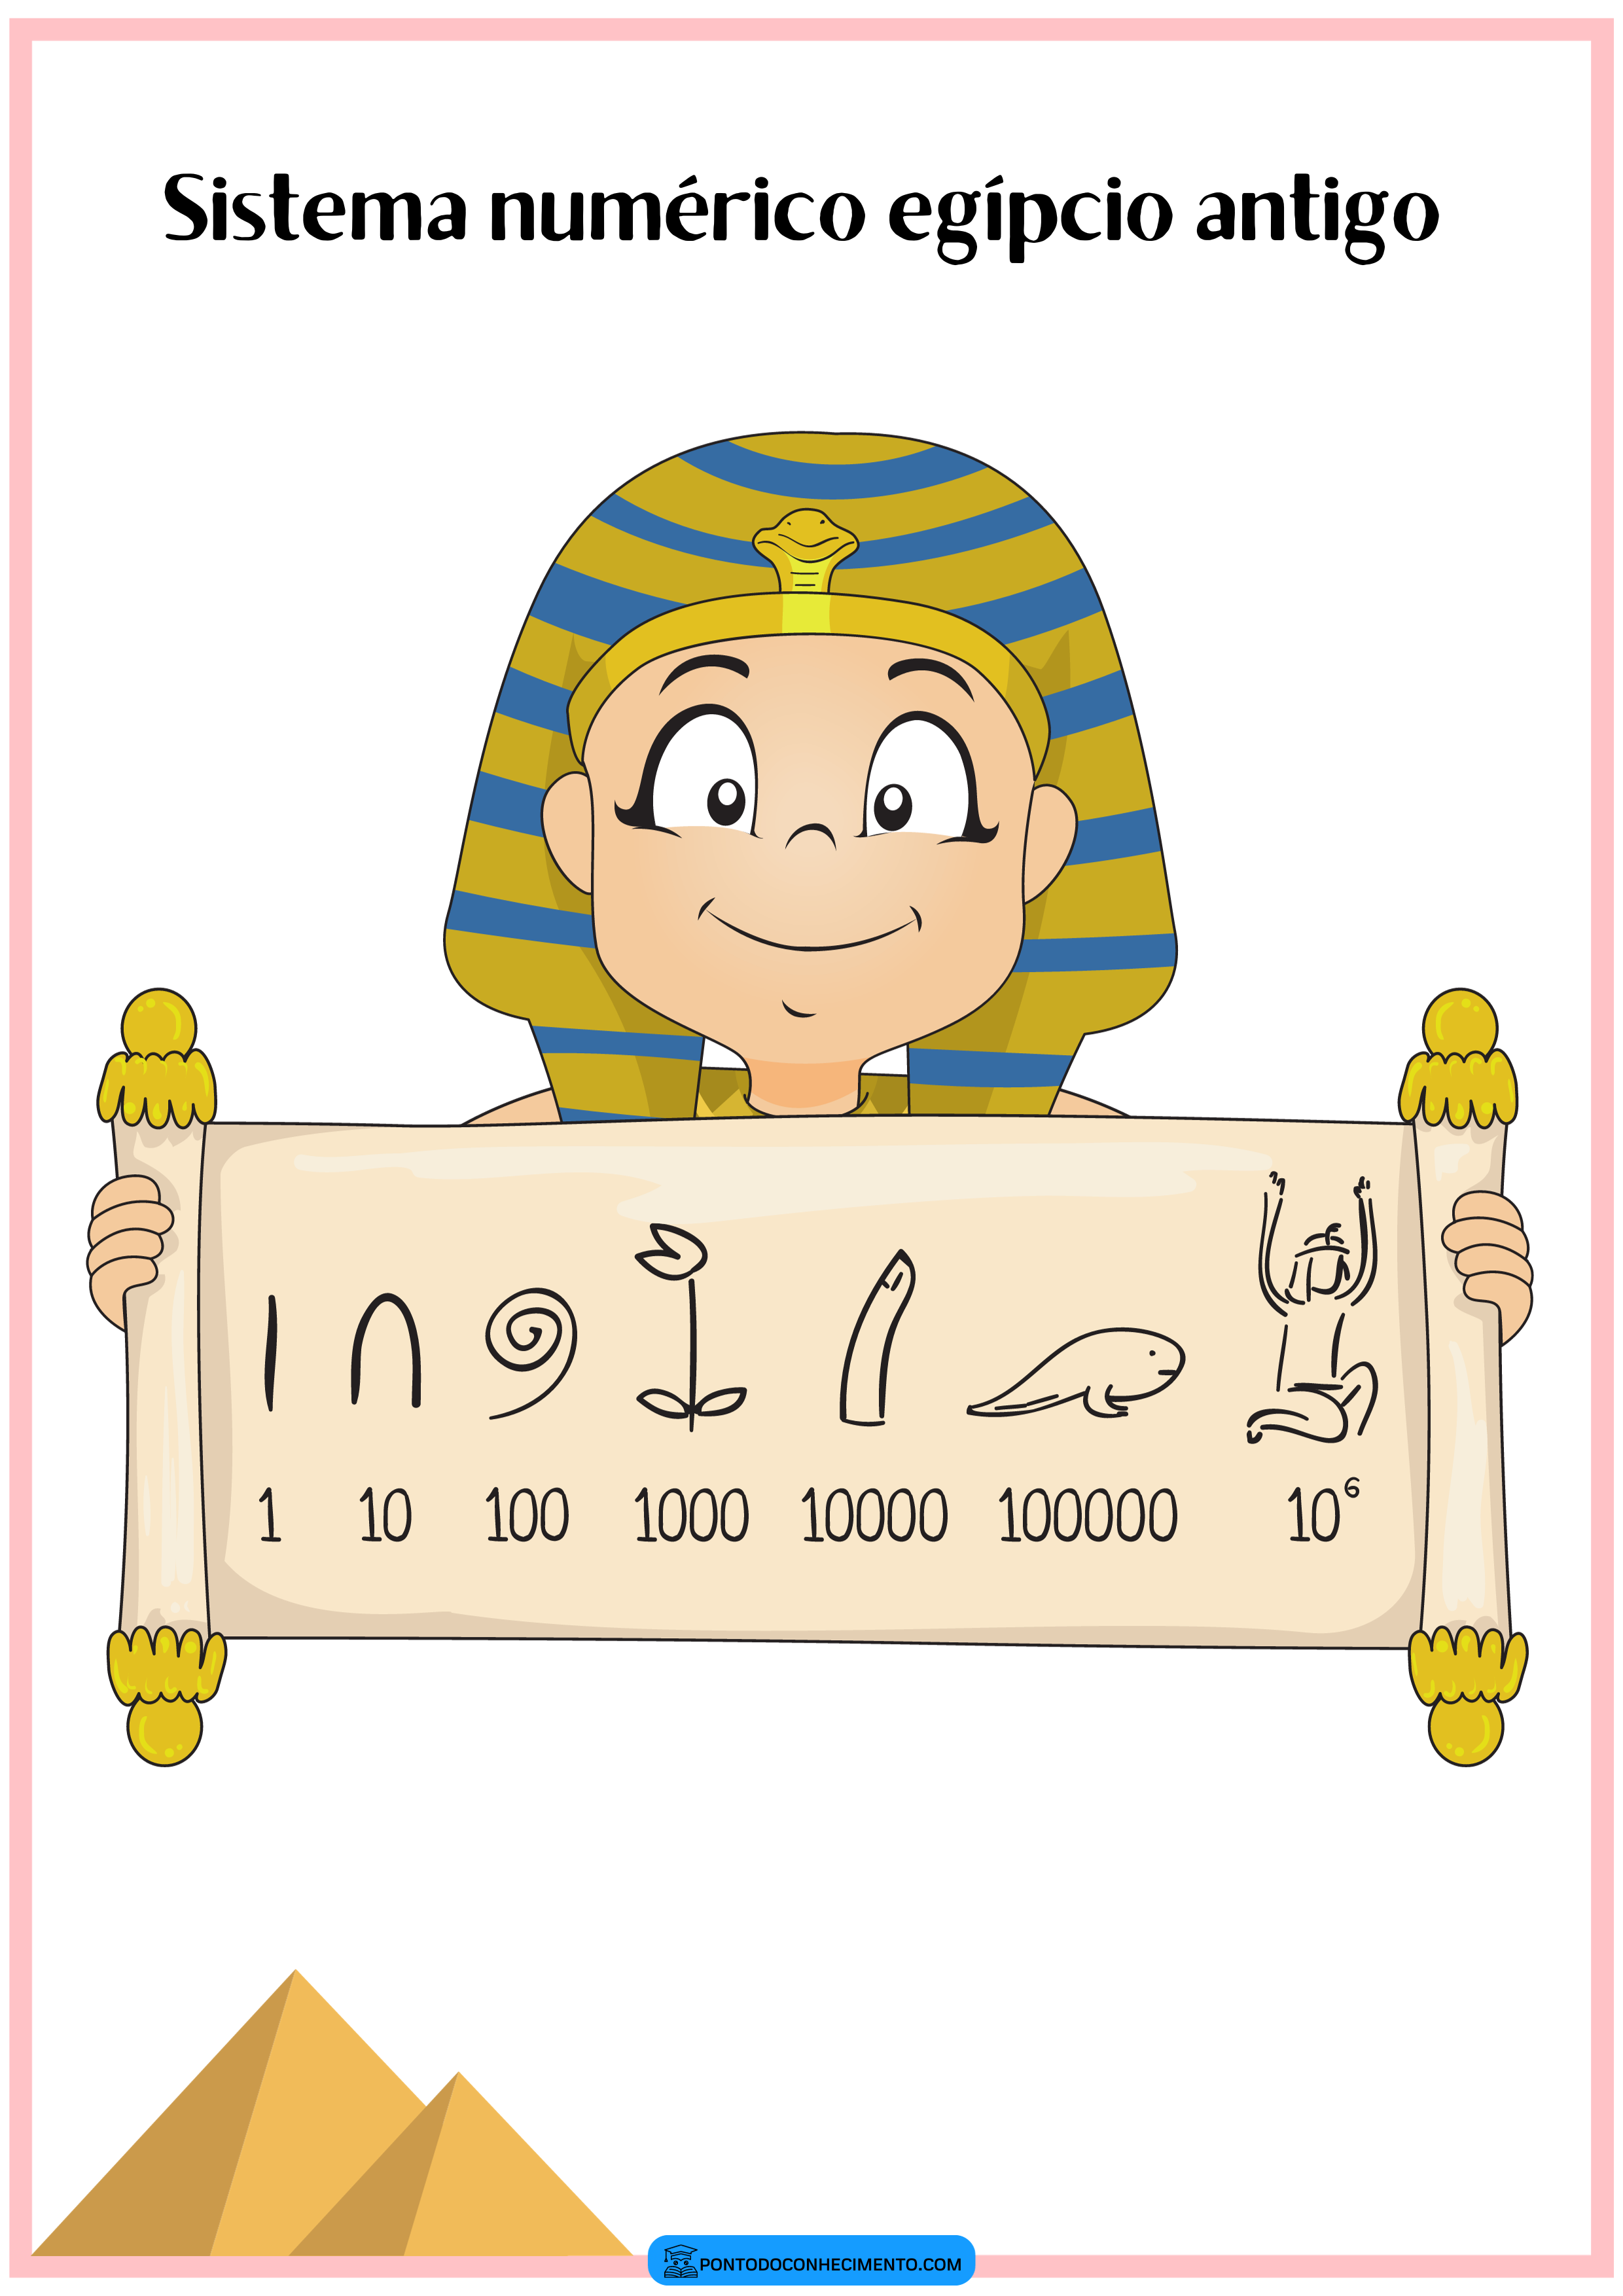 Sistema numérico egípcio antigo